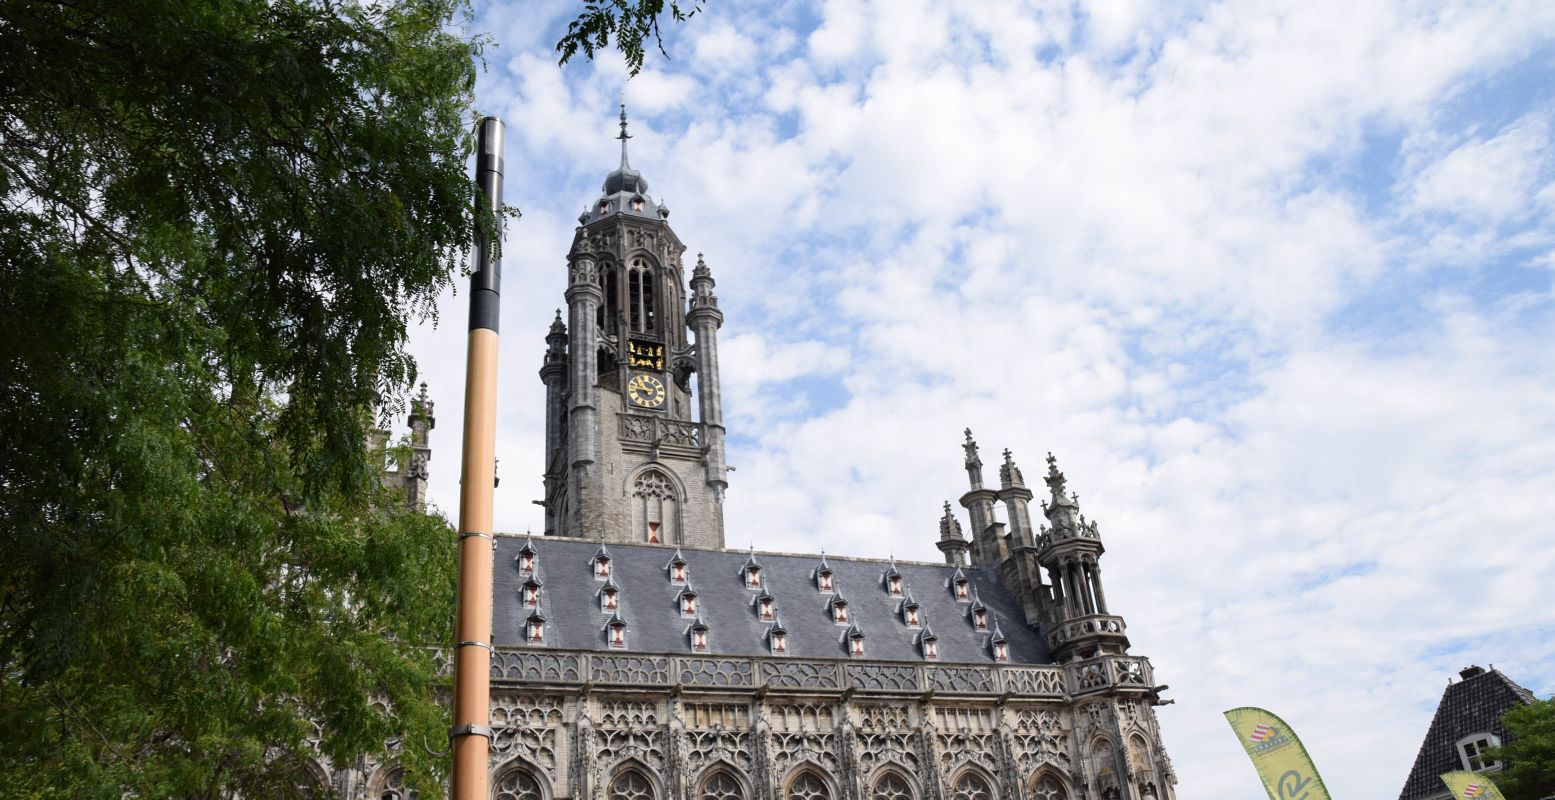 Je kijkt je ogen uit in de binnenstad van het historische Middelburg. Foto: Redactie DagjeWeg.NL